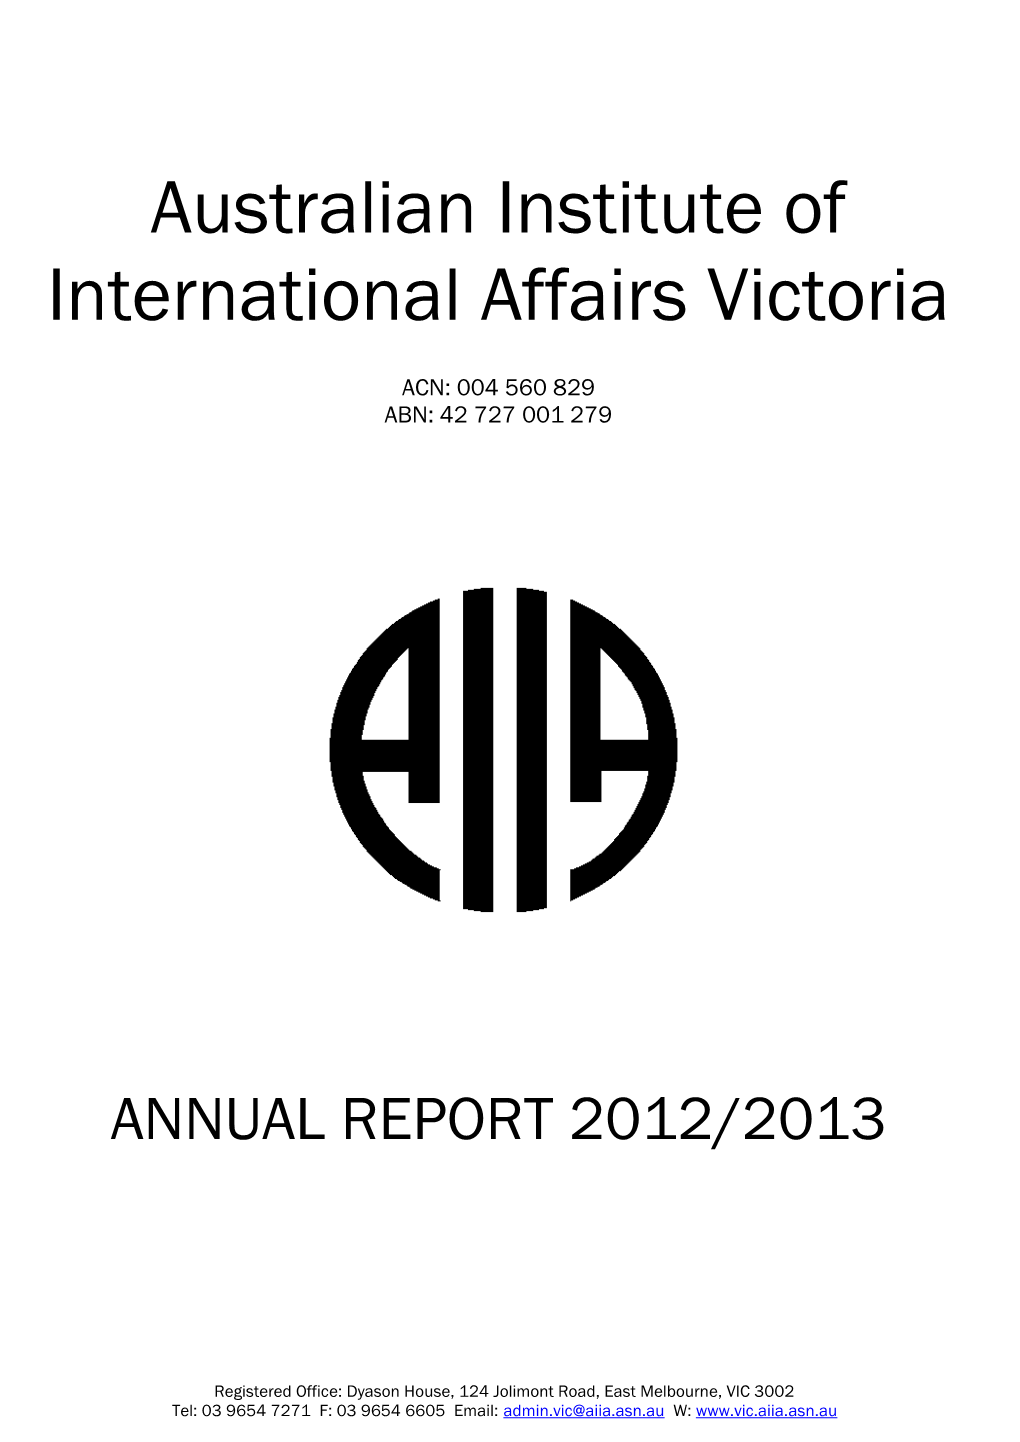 Australian Institute of International Affairs Victoria